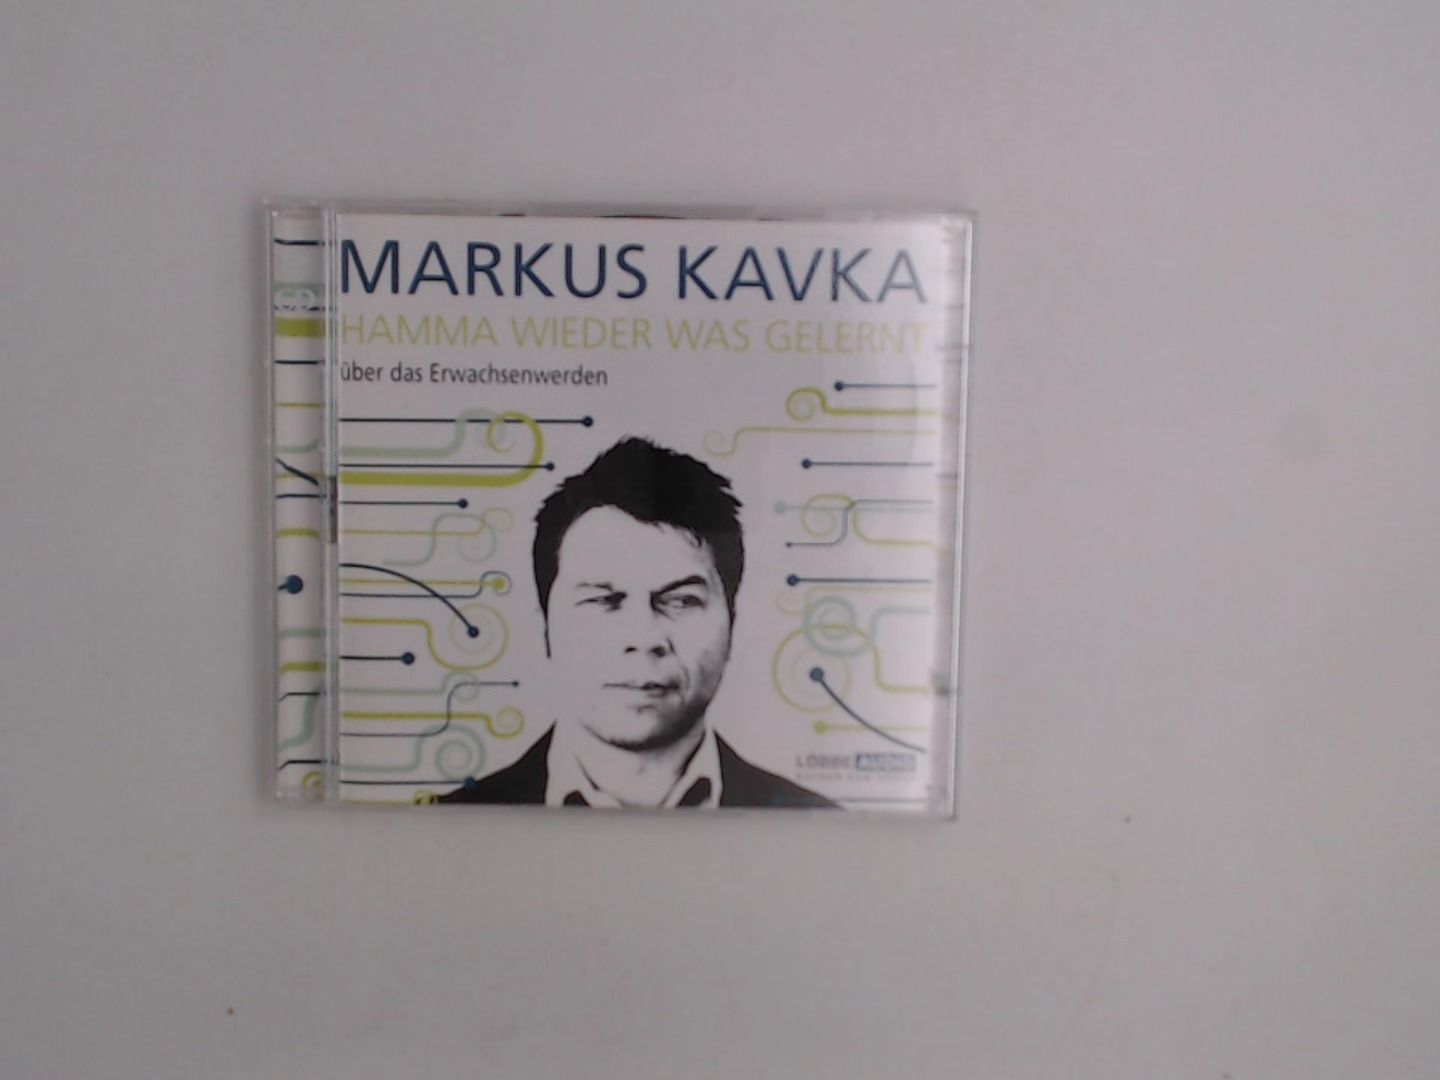 Hamma Wieder Was Gelernt  1. Aufl. 2008 - KavkaMarkus, Markus und Markus Kavka